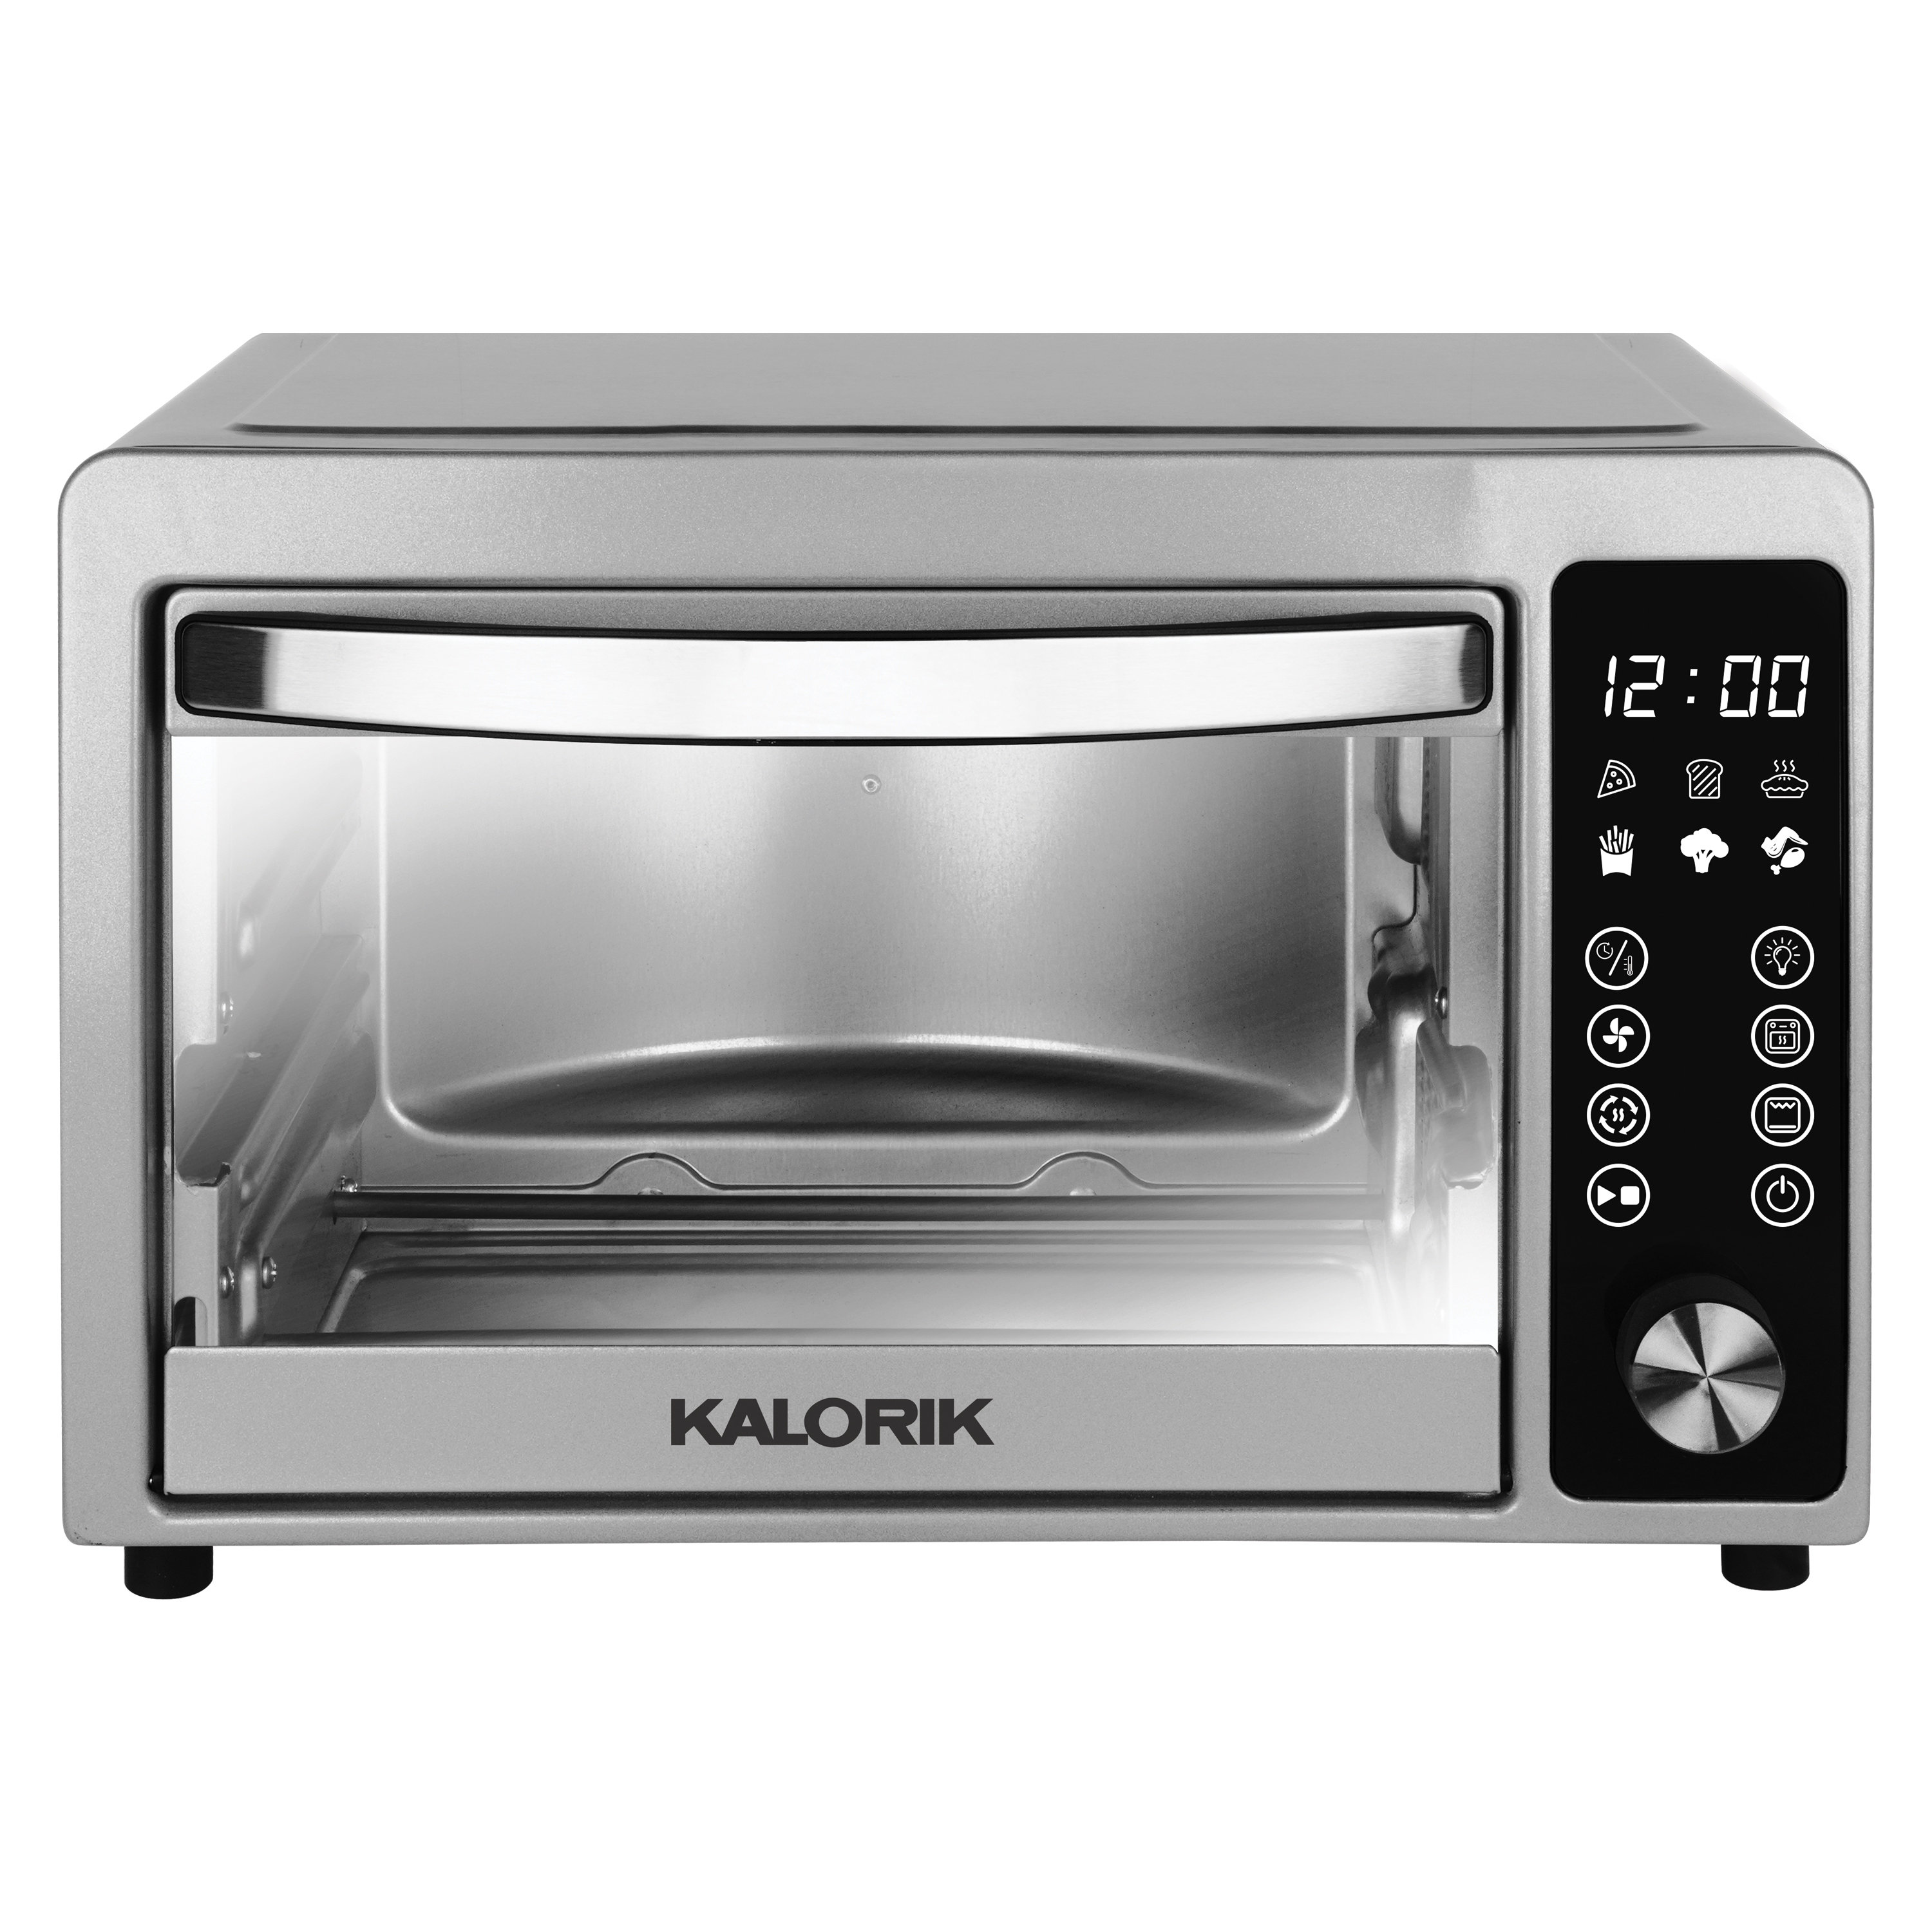 https://assets.wfcdn.com/im/40829655/compr-r85/2597/259703836/kalorik-22-quart-touchscreen-air-fryer-toaster-oven-in-silver.jpg